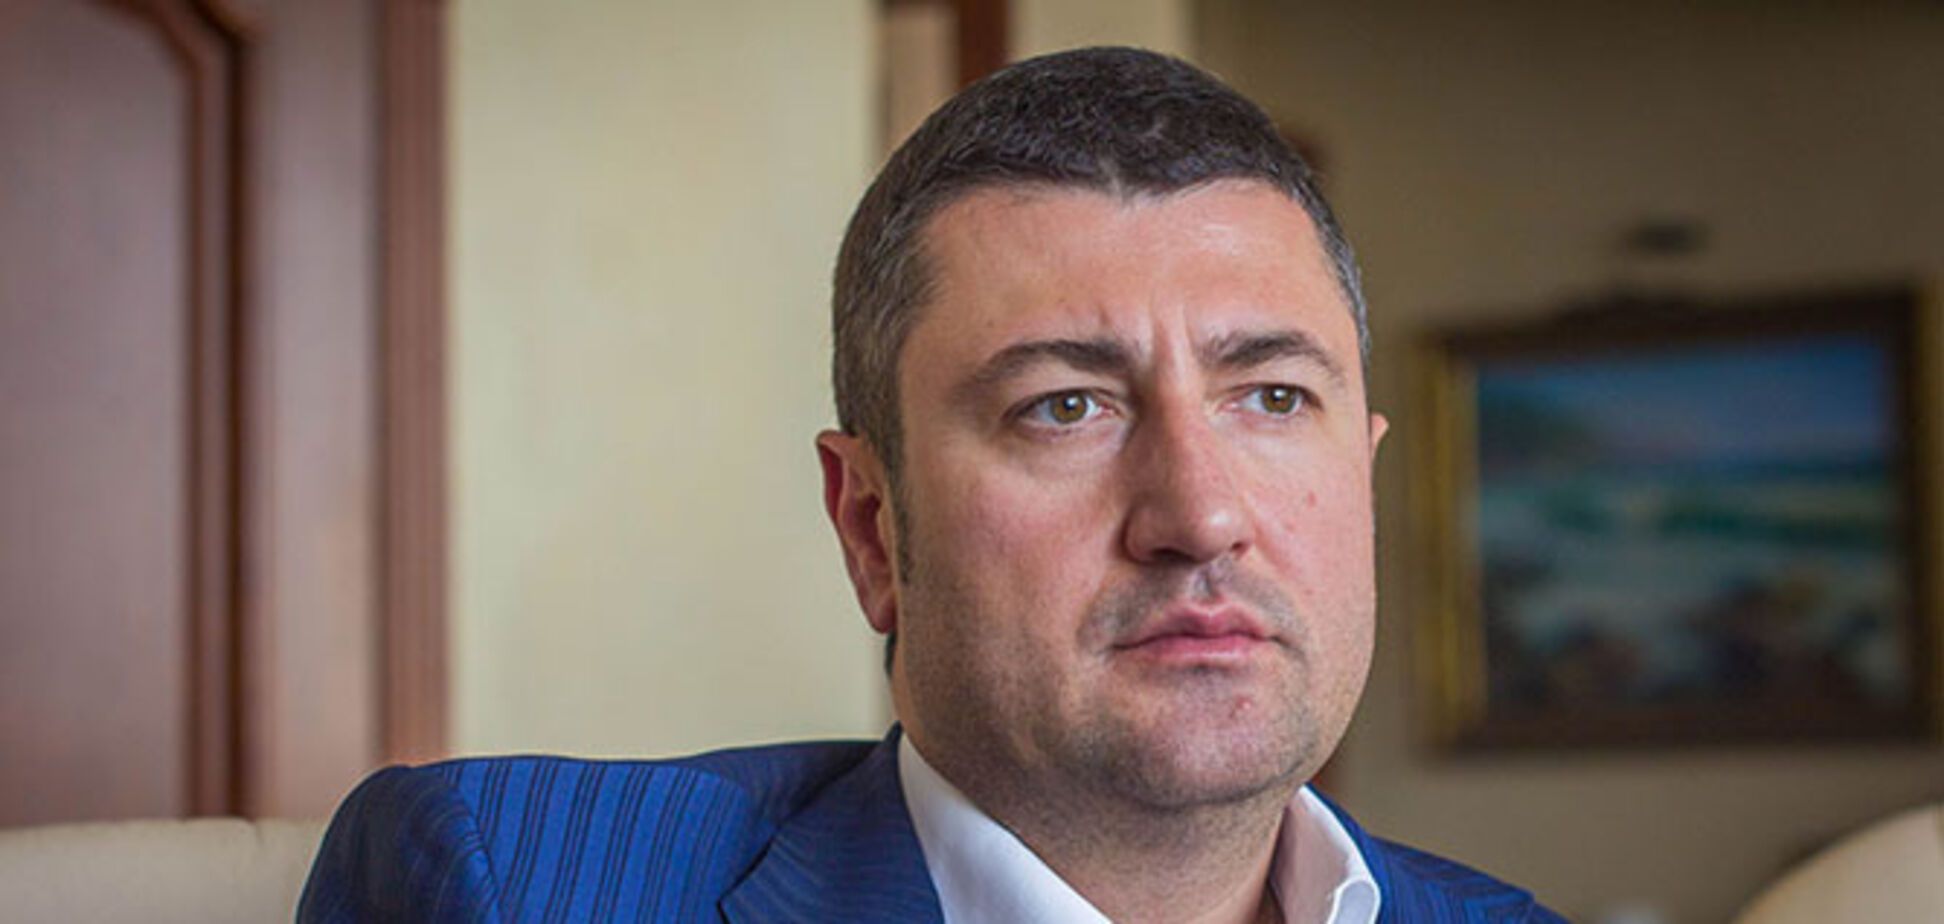 Олег Бахматюк рассказал о том, как директор НАБУ  назвал открытое совещание в НБУ, чтобы сфальсифицировать дело против него